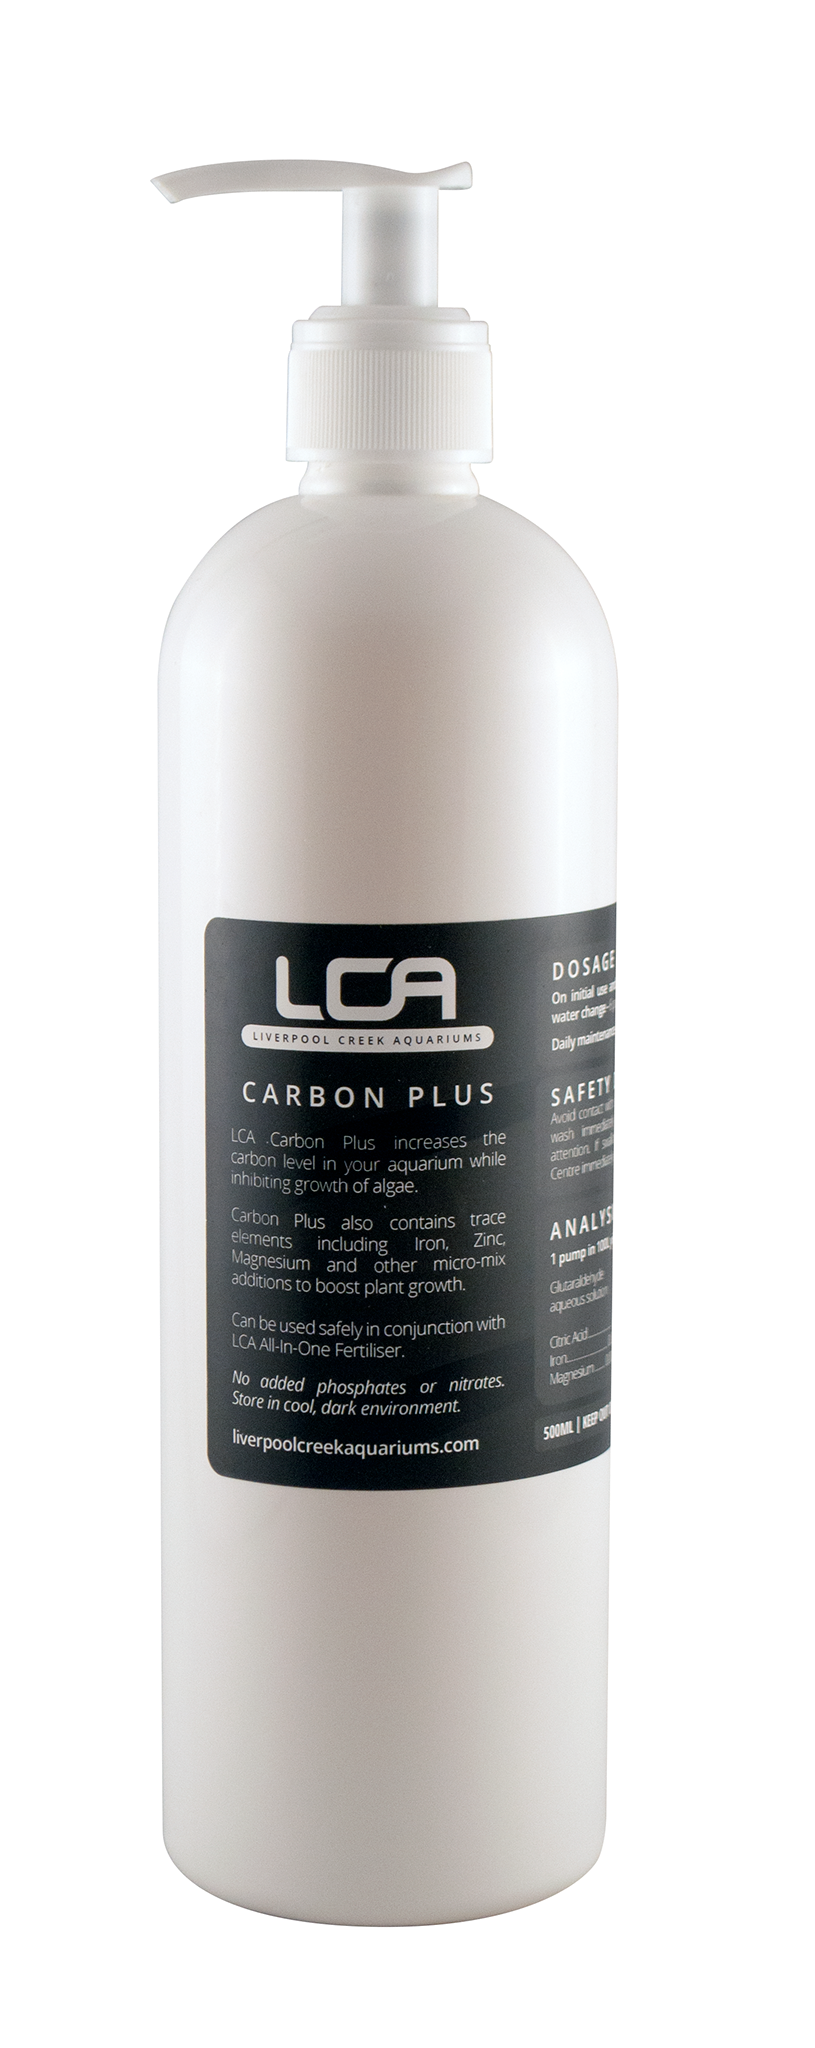 LCA Carbon Plus